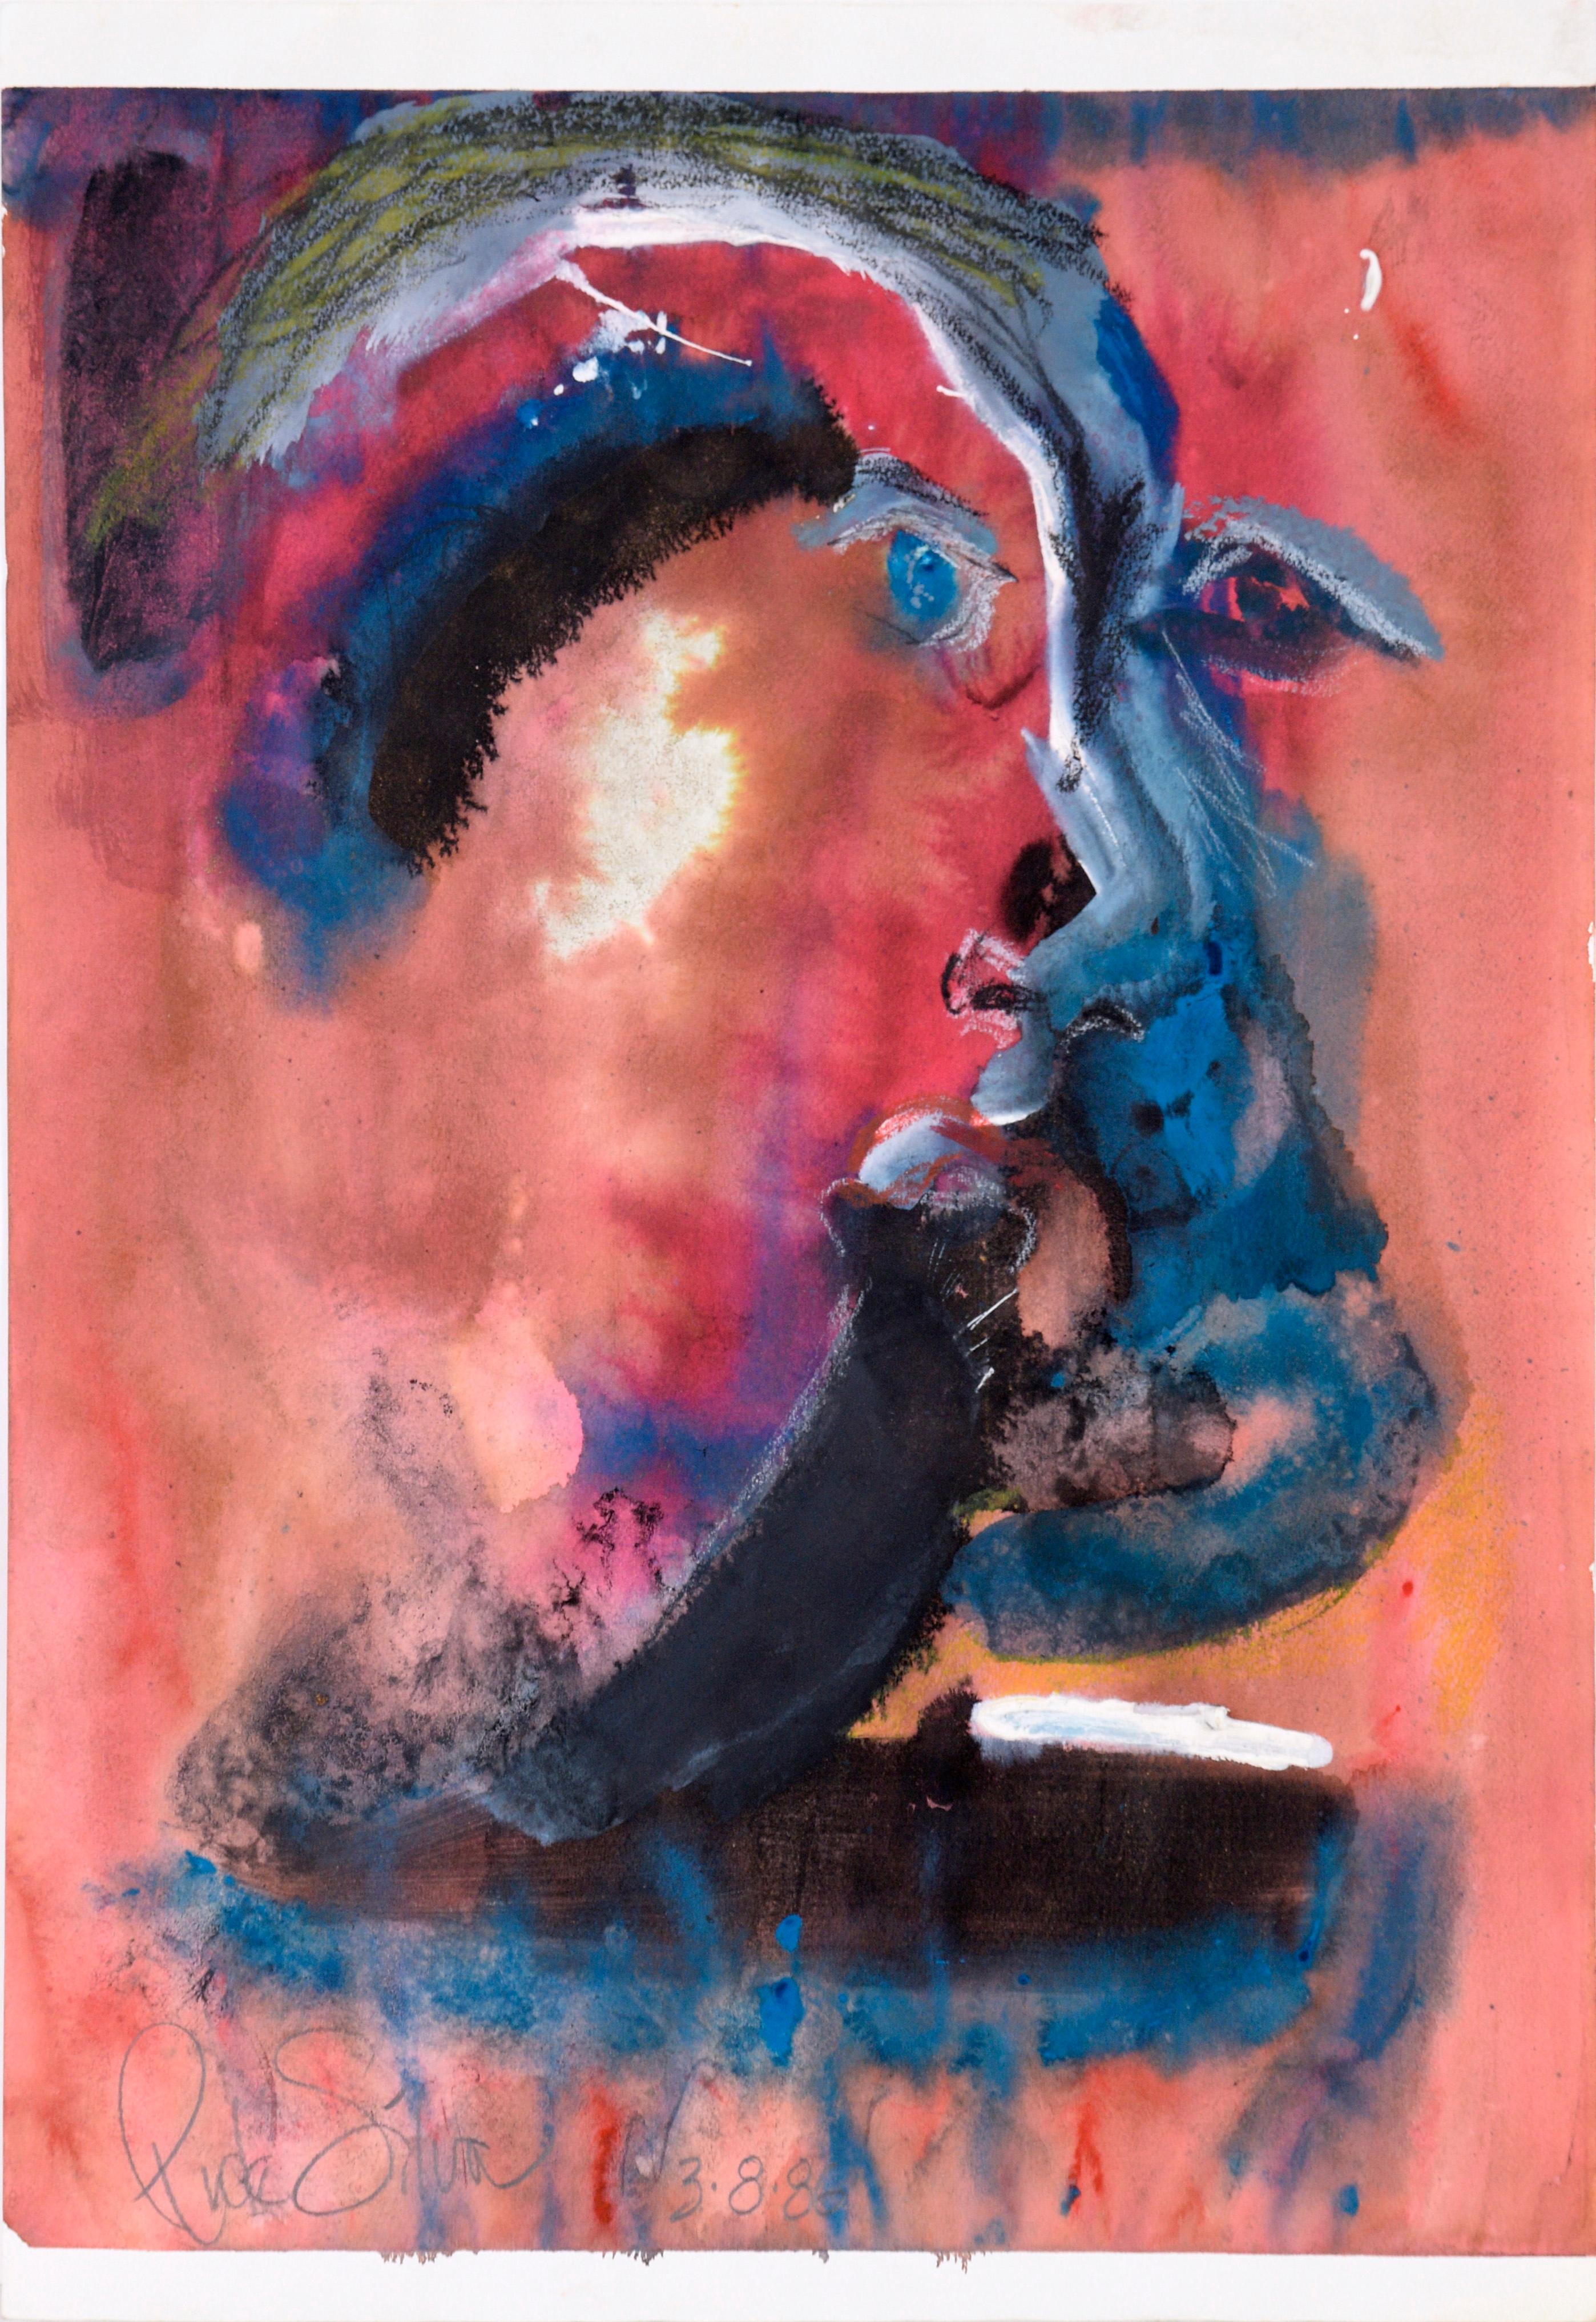 Abstrakt-expressionistisches Selbstporträt in Acryl und Pastell auf Papier